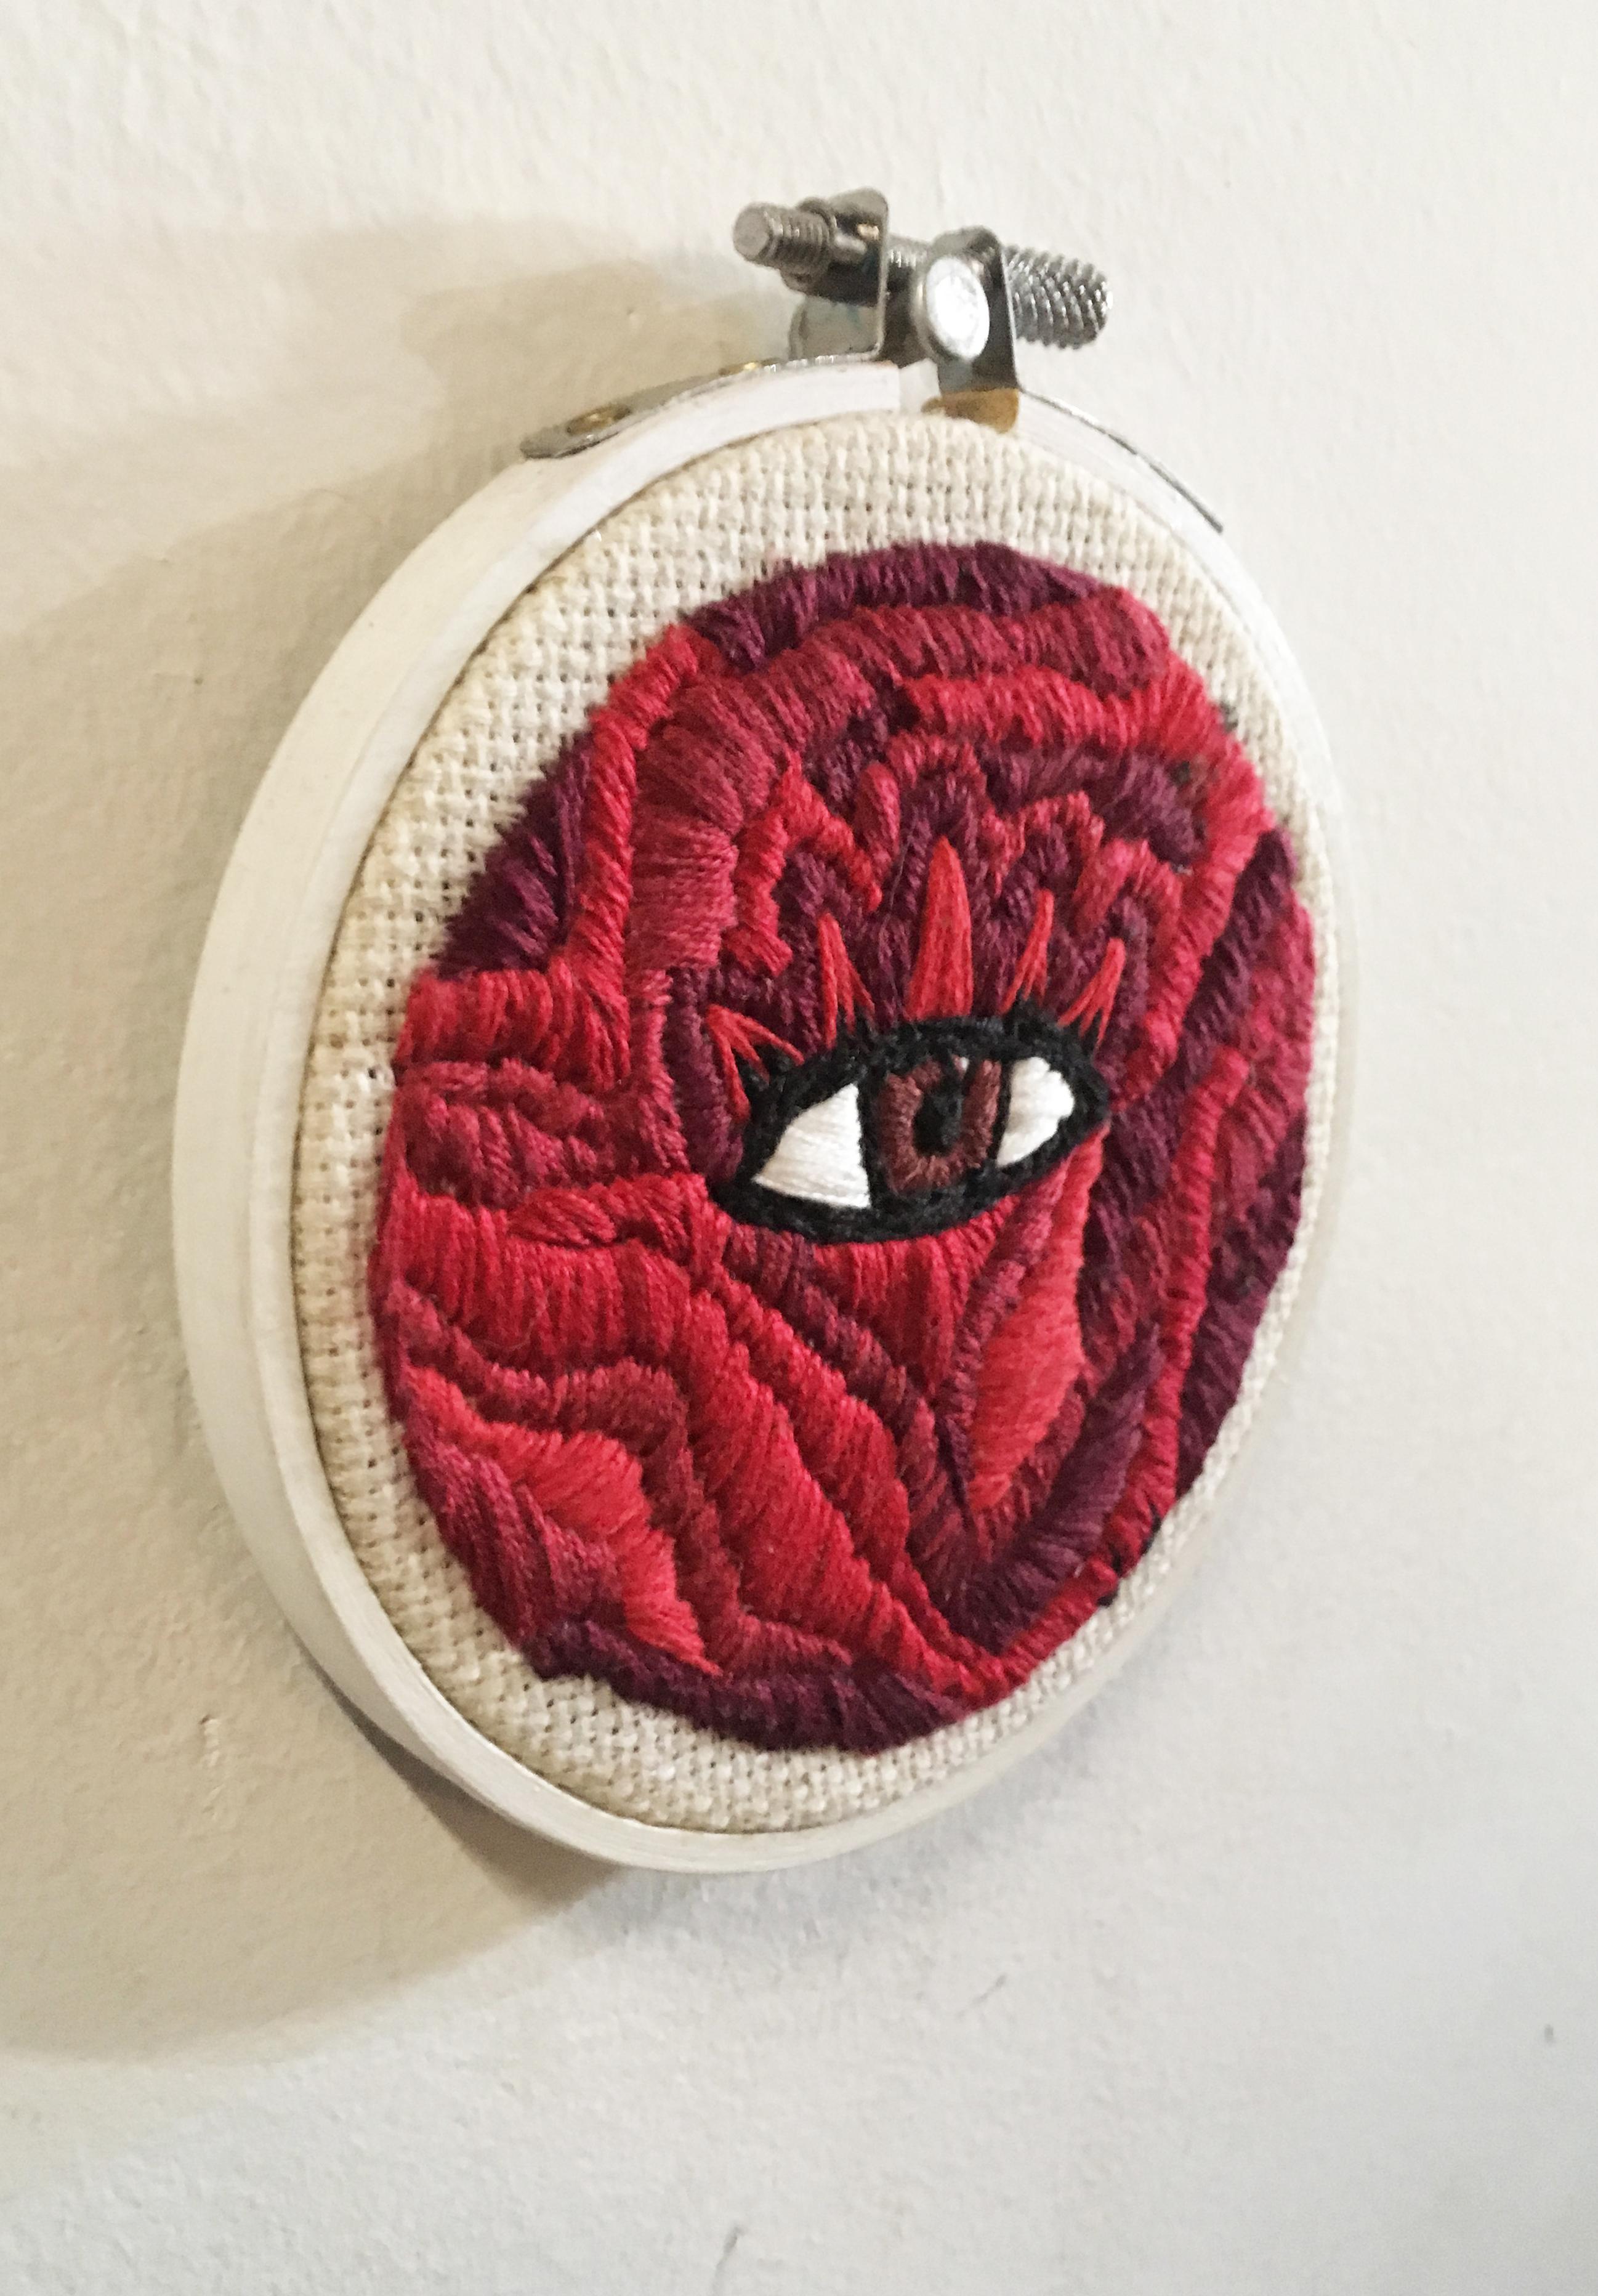 Embroidery in wood hoop
